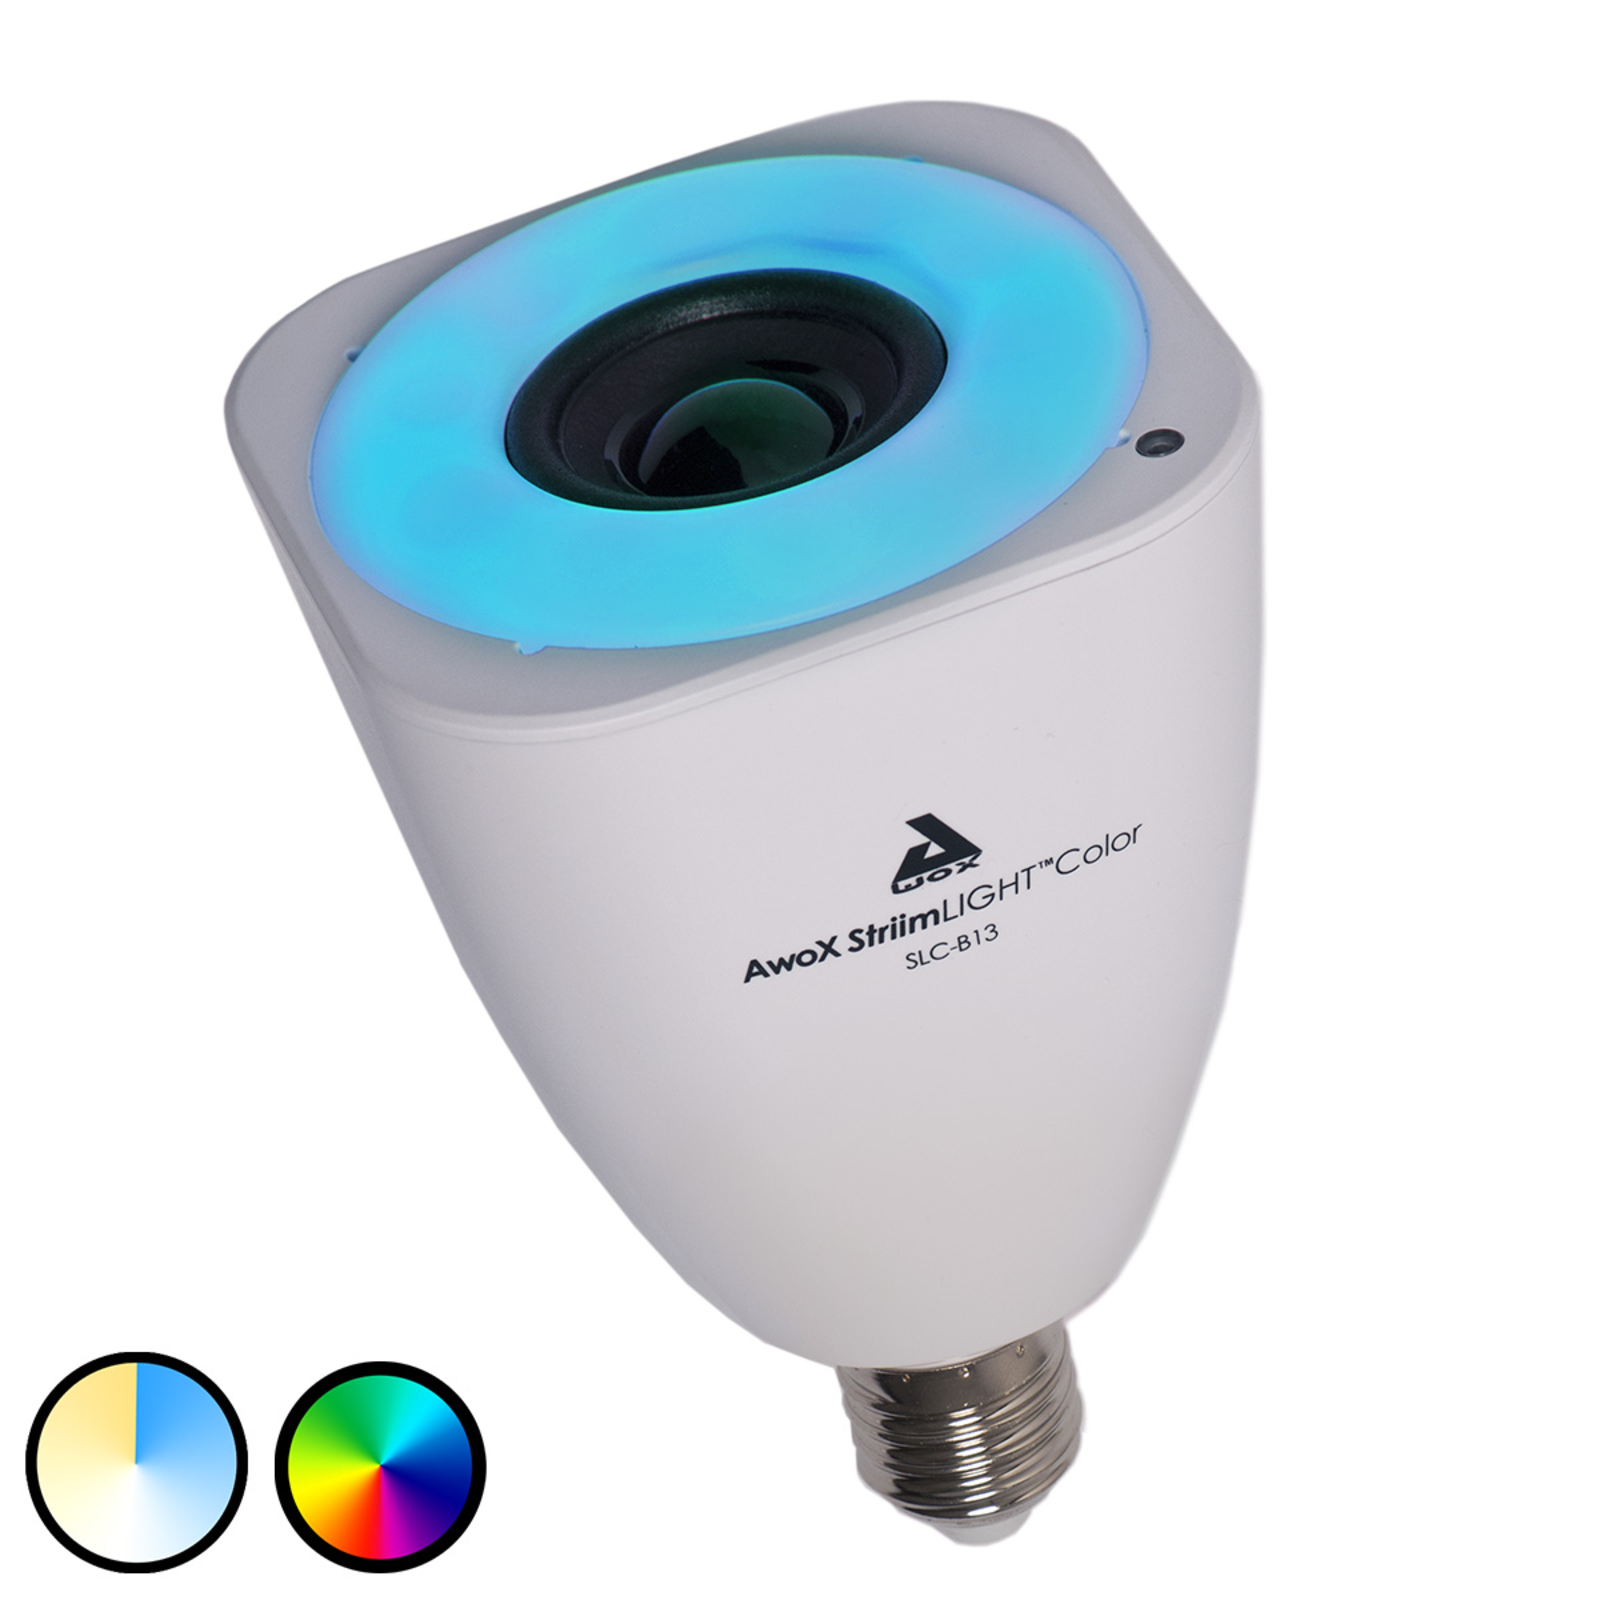 "AwoX StriimLIGHT" spalvotas LED šviestuvas E27, "Bluetooth